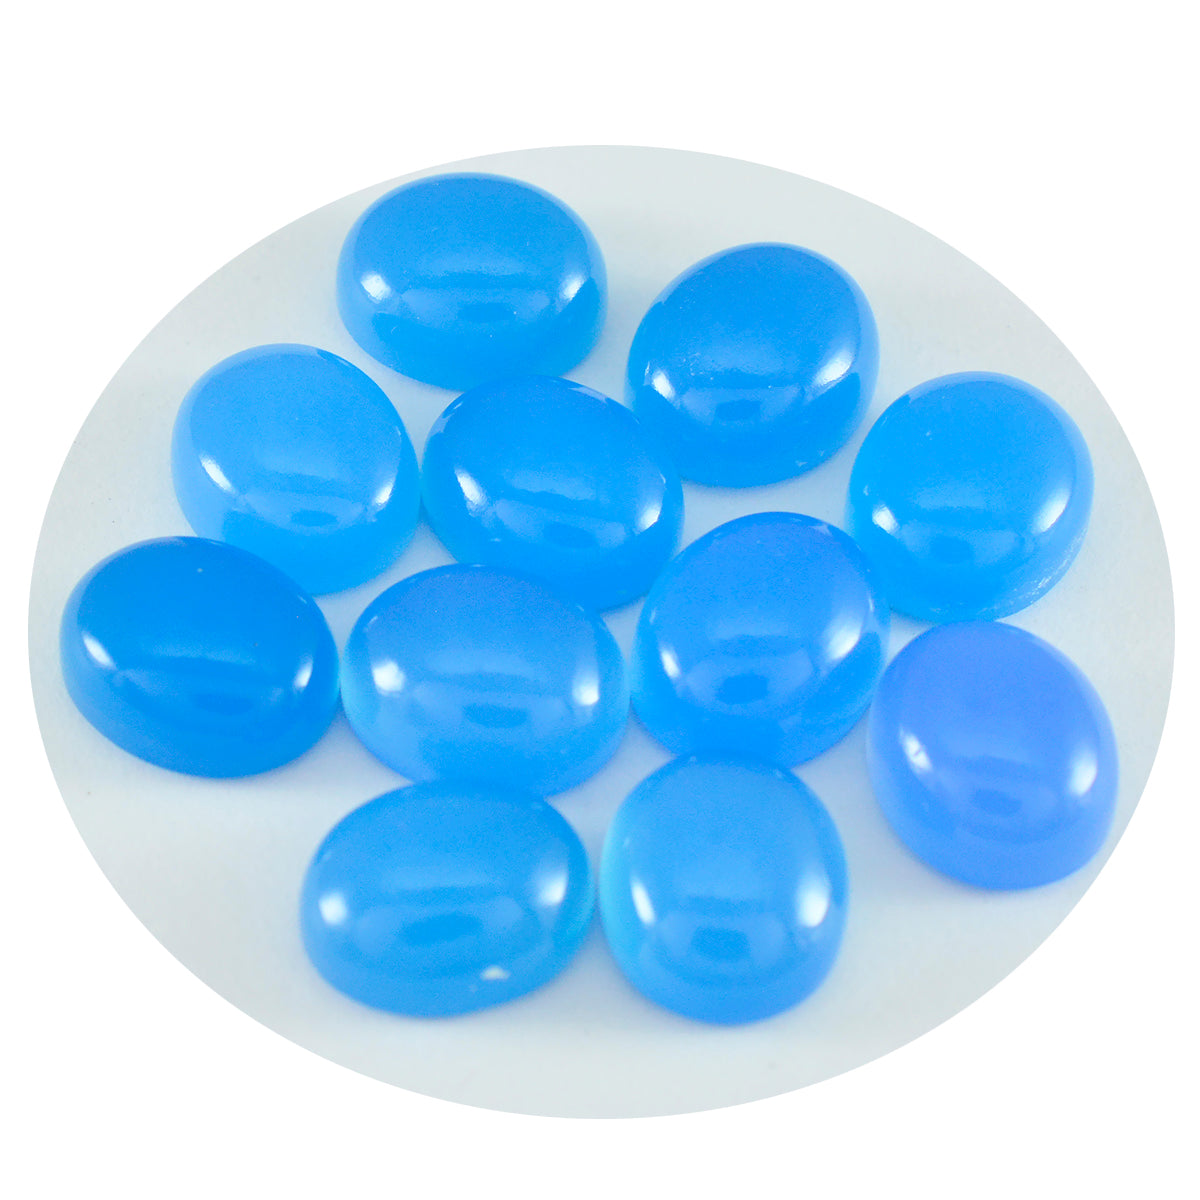 Riyogems 1 pieza cabujón de Calcedonia azul 6x8mm forma ovalada gema suelta de calidad maravillosa